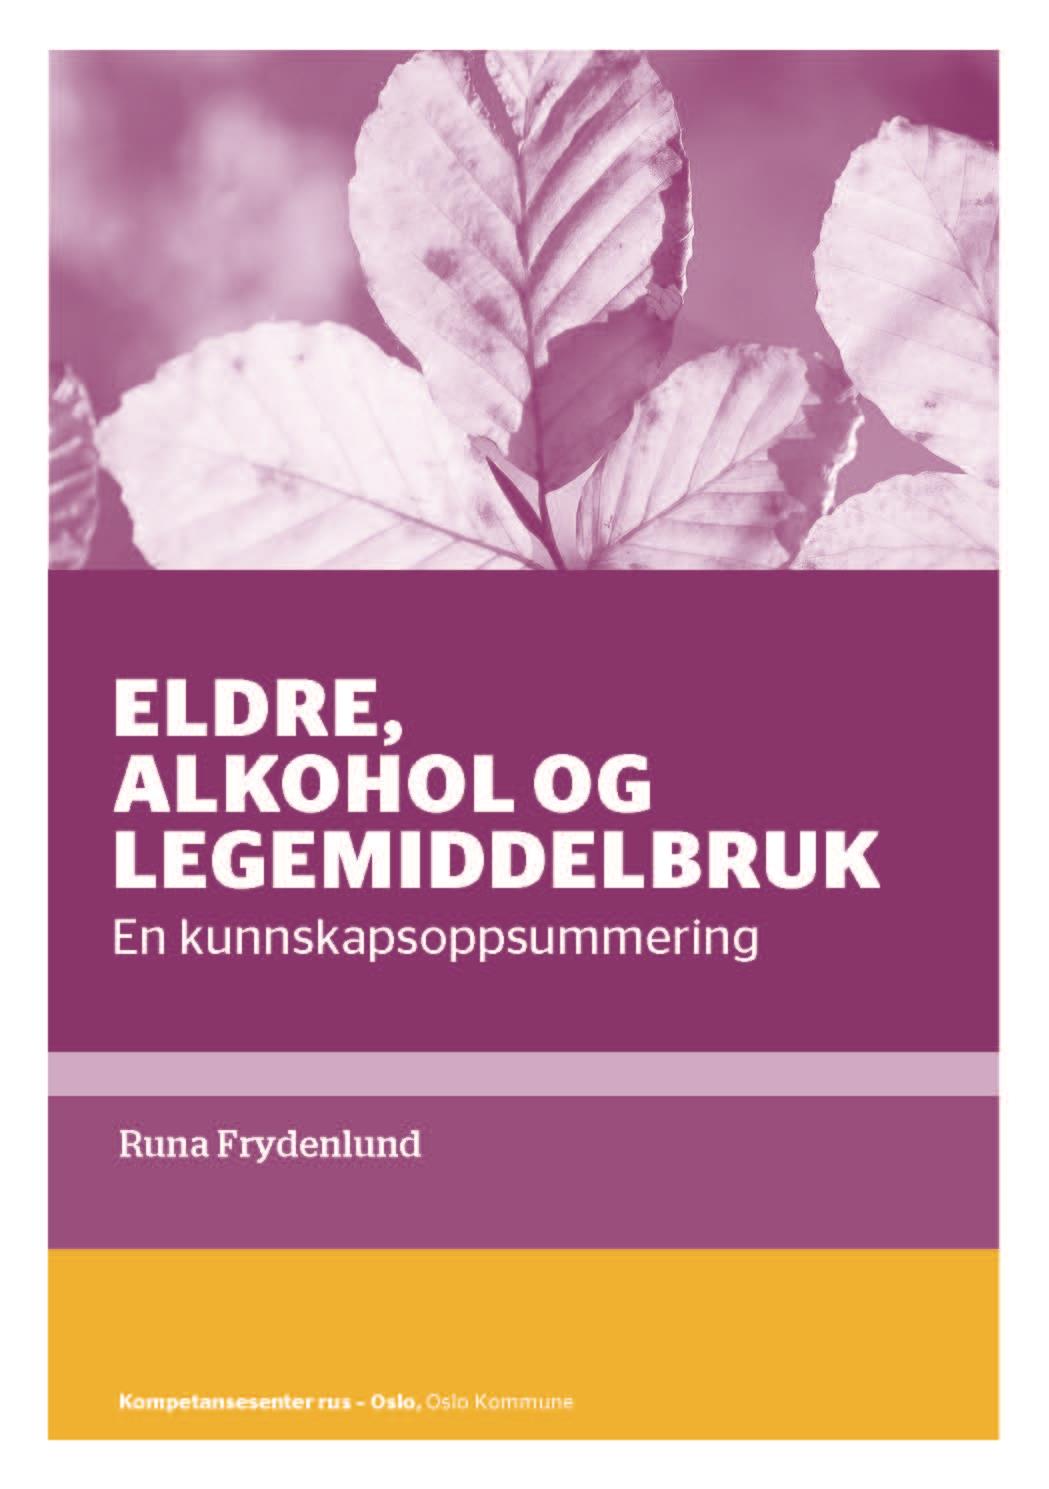 Metode for kunnskapsoppsummeringen Eldre, alkohol og legemiddelbruk